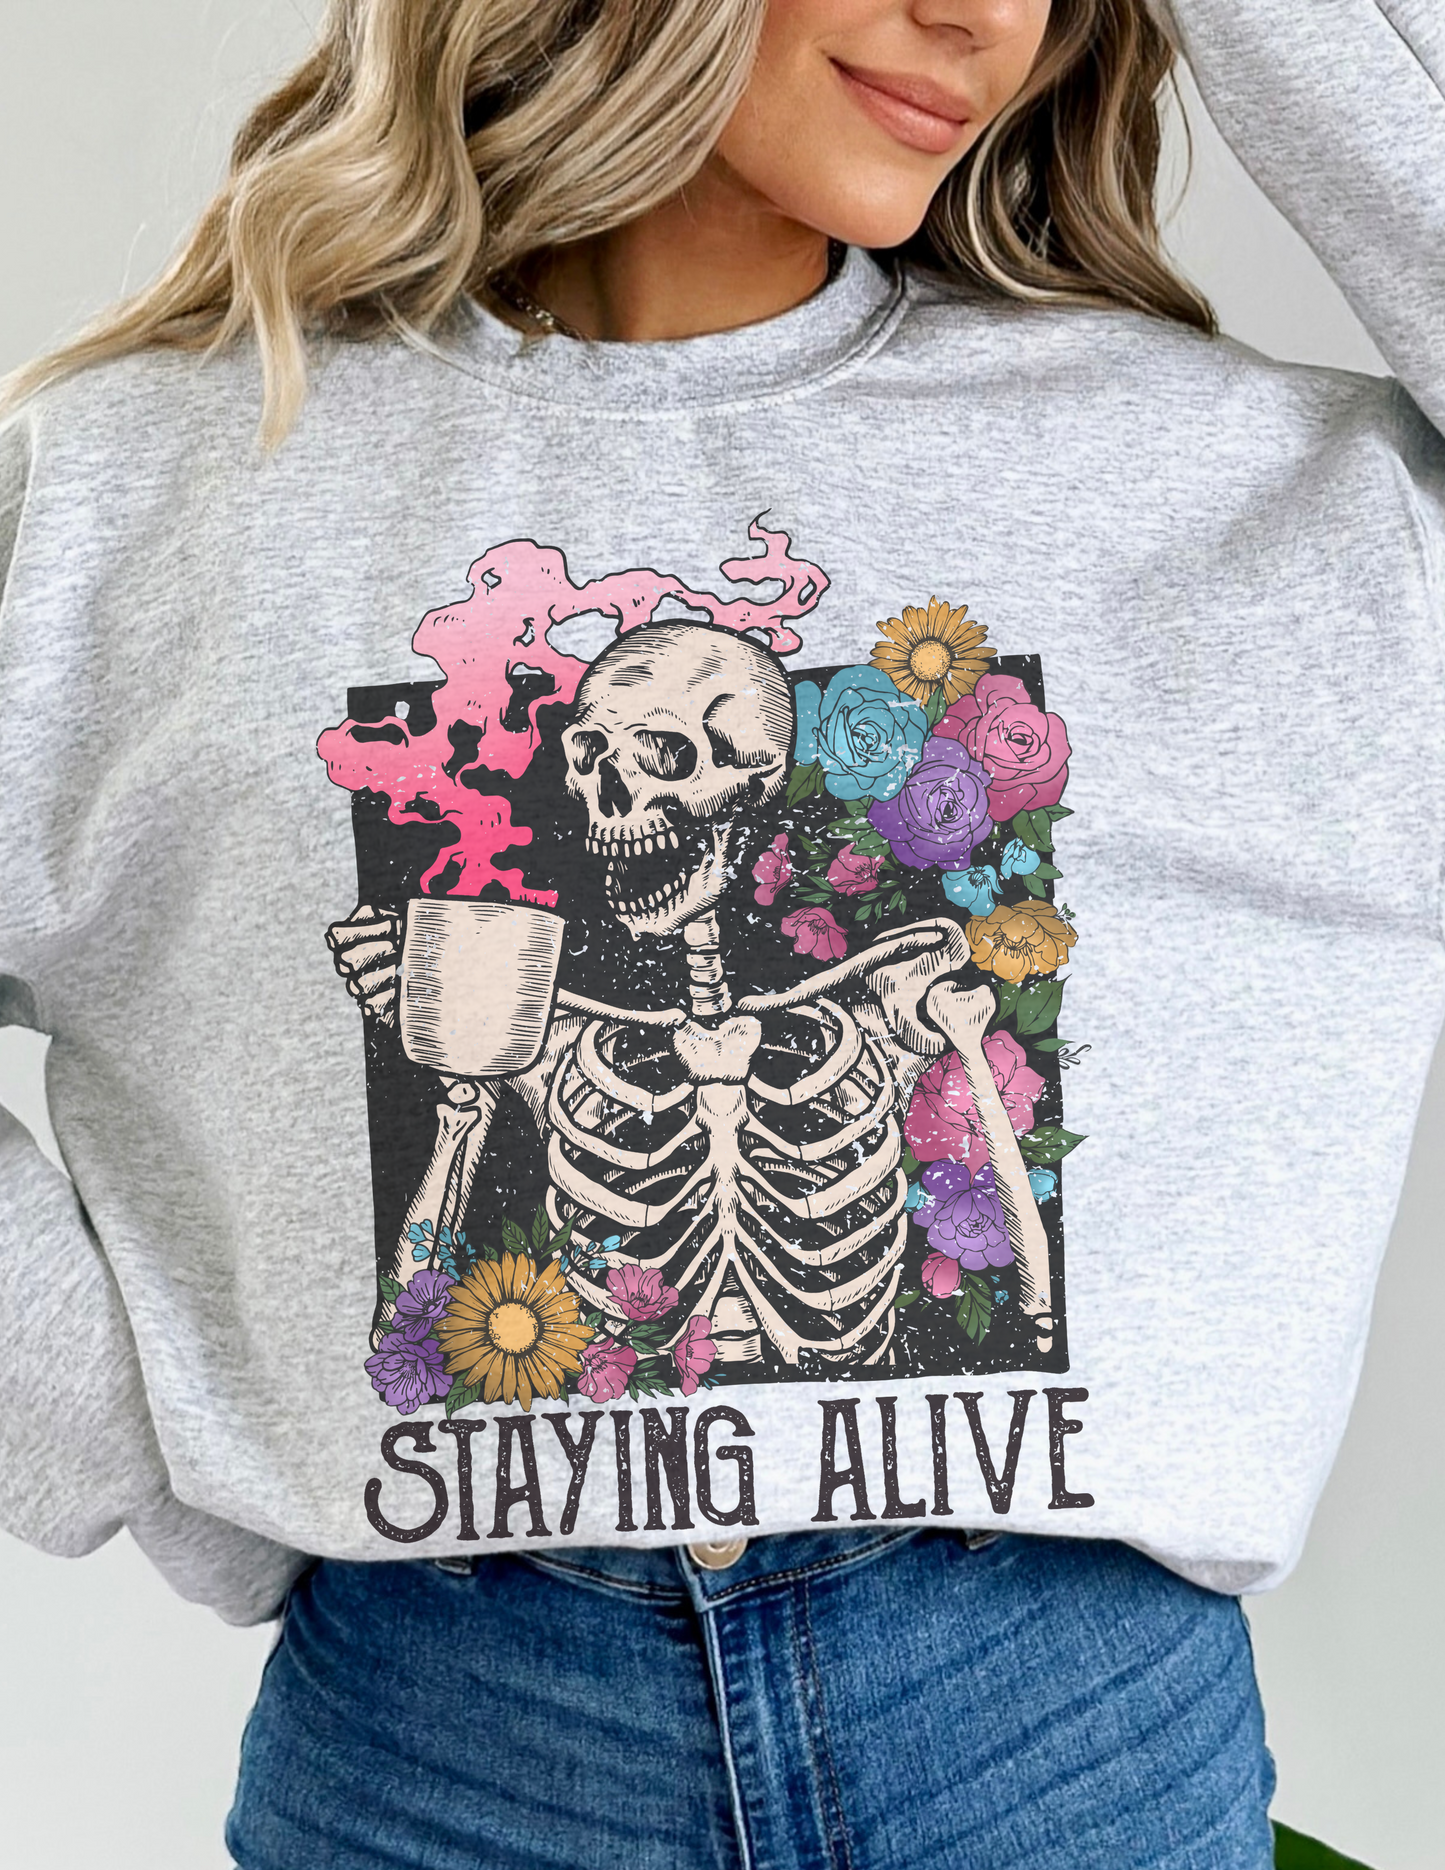 Staying Alive Sweatshirt